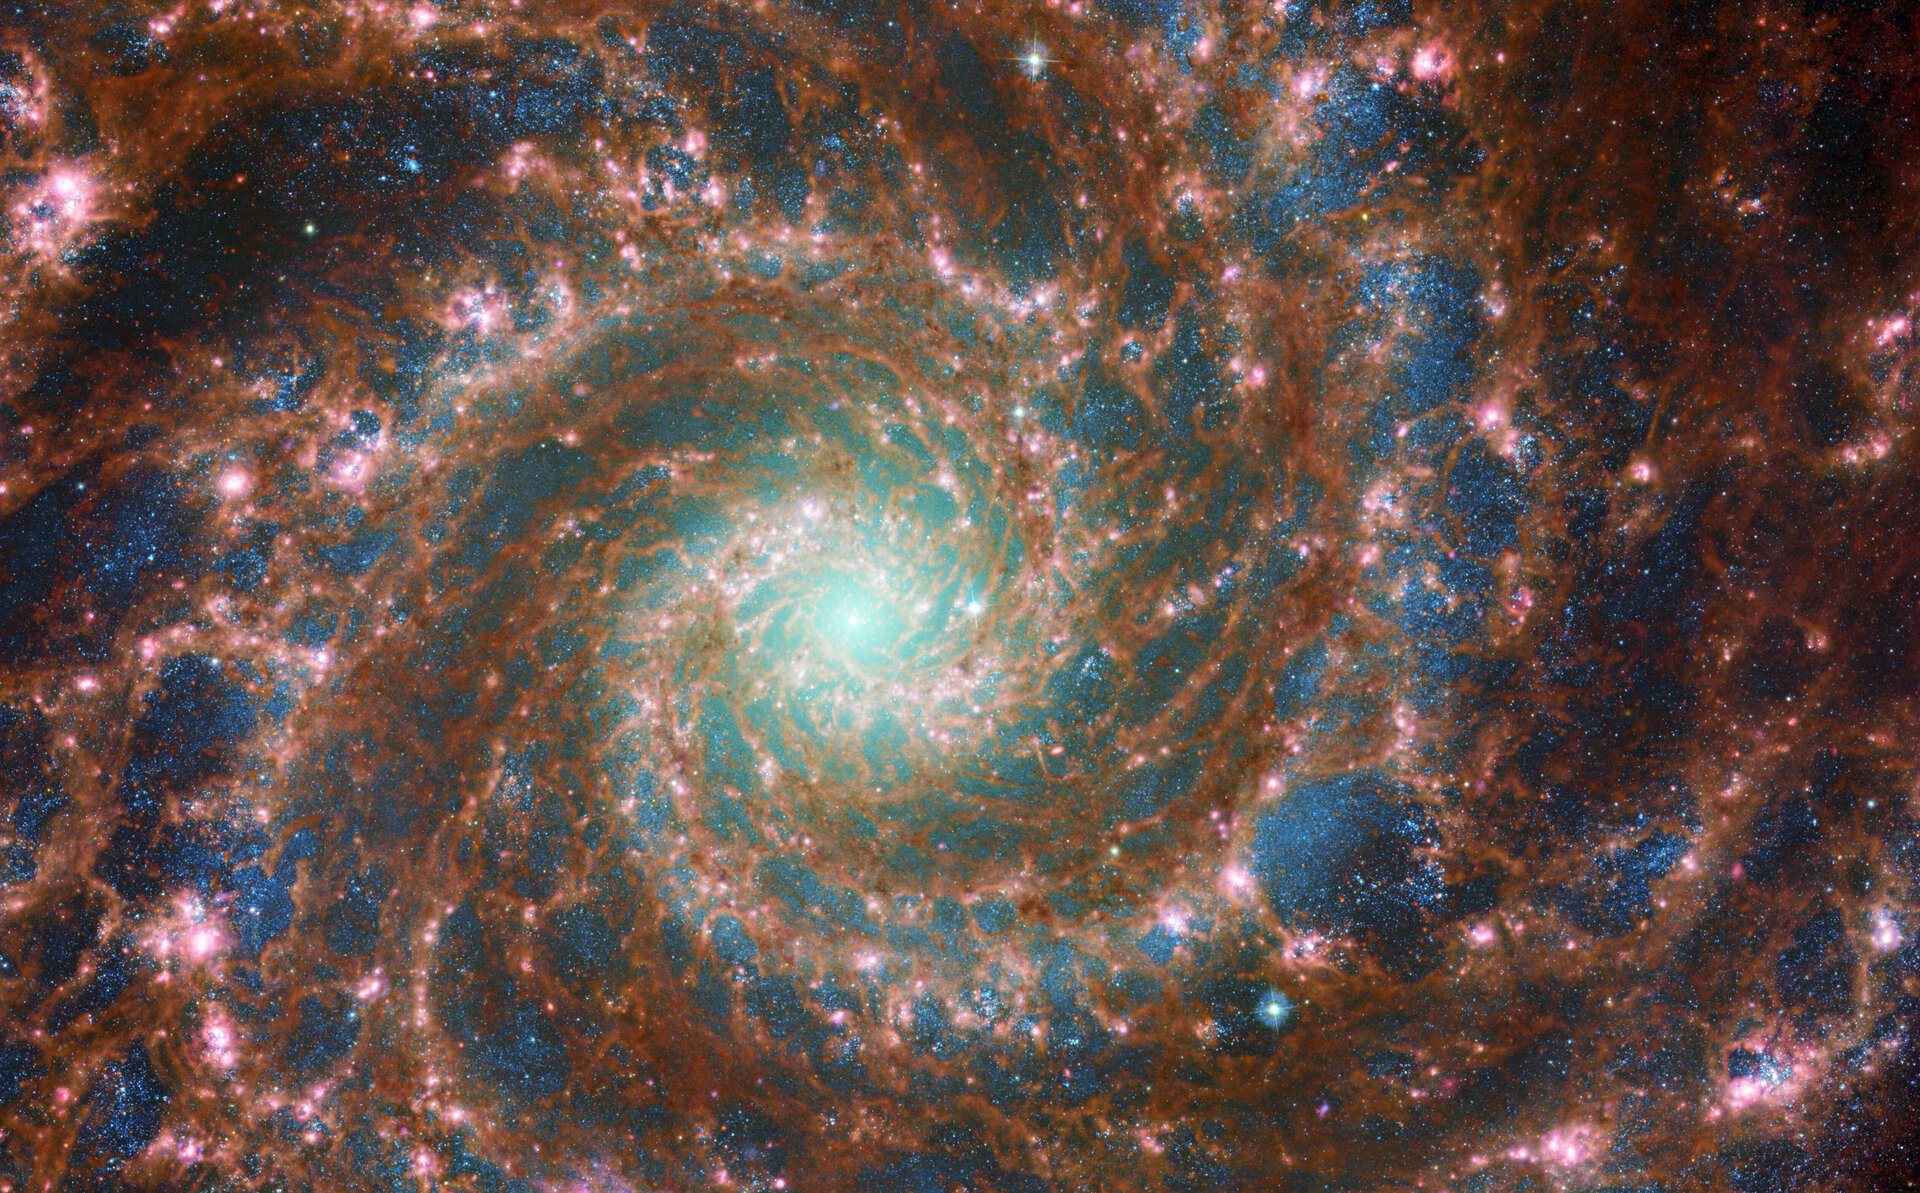 Découvrez l'image époustouflante de la Galaxie du Fantôme capturée par James Webb